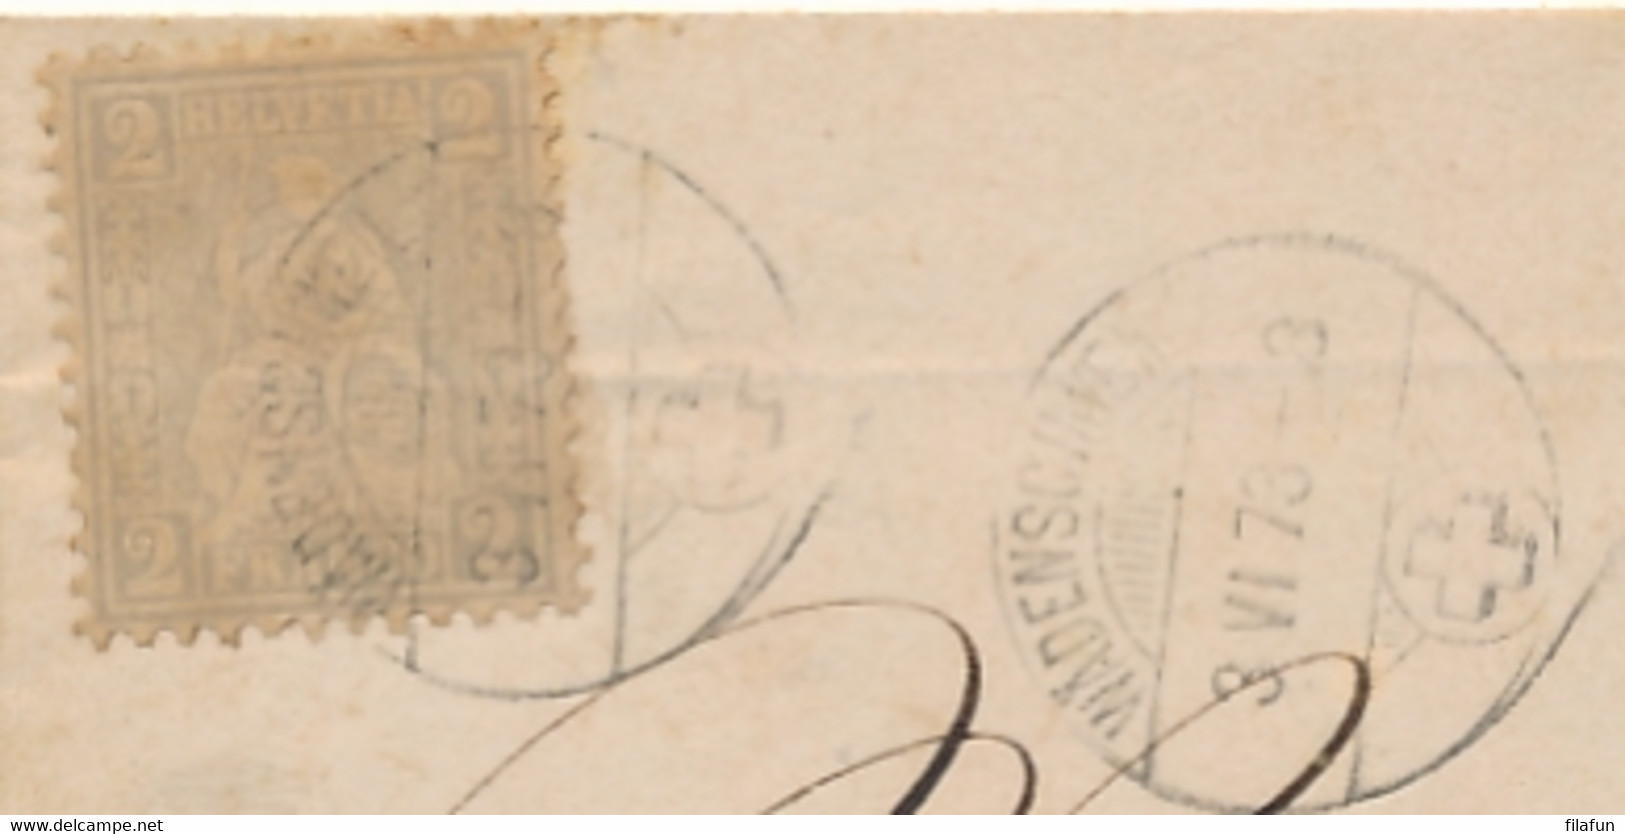 Schweiz - 1873 - 2c Sitzende Helvetia On Complete Printed Matter From Wädensweil To Solothurn - Briefe U. Dokumente